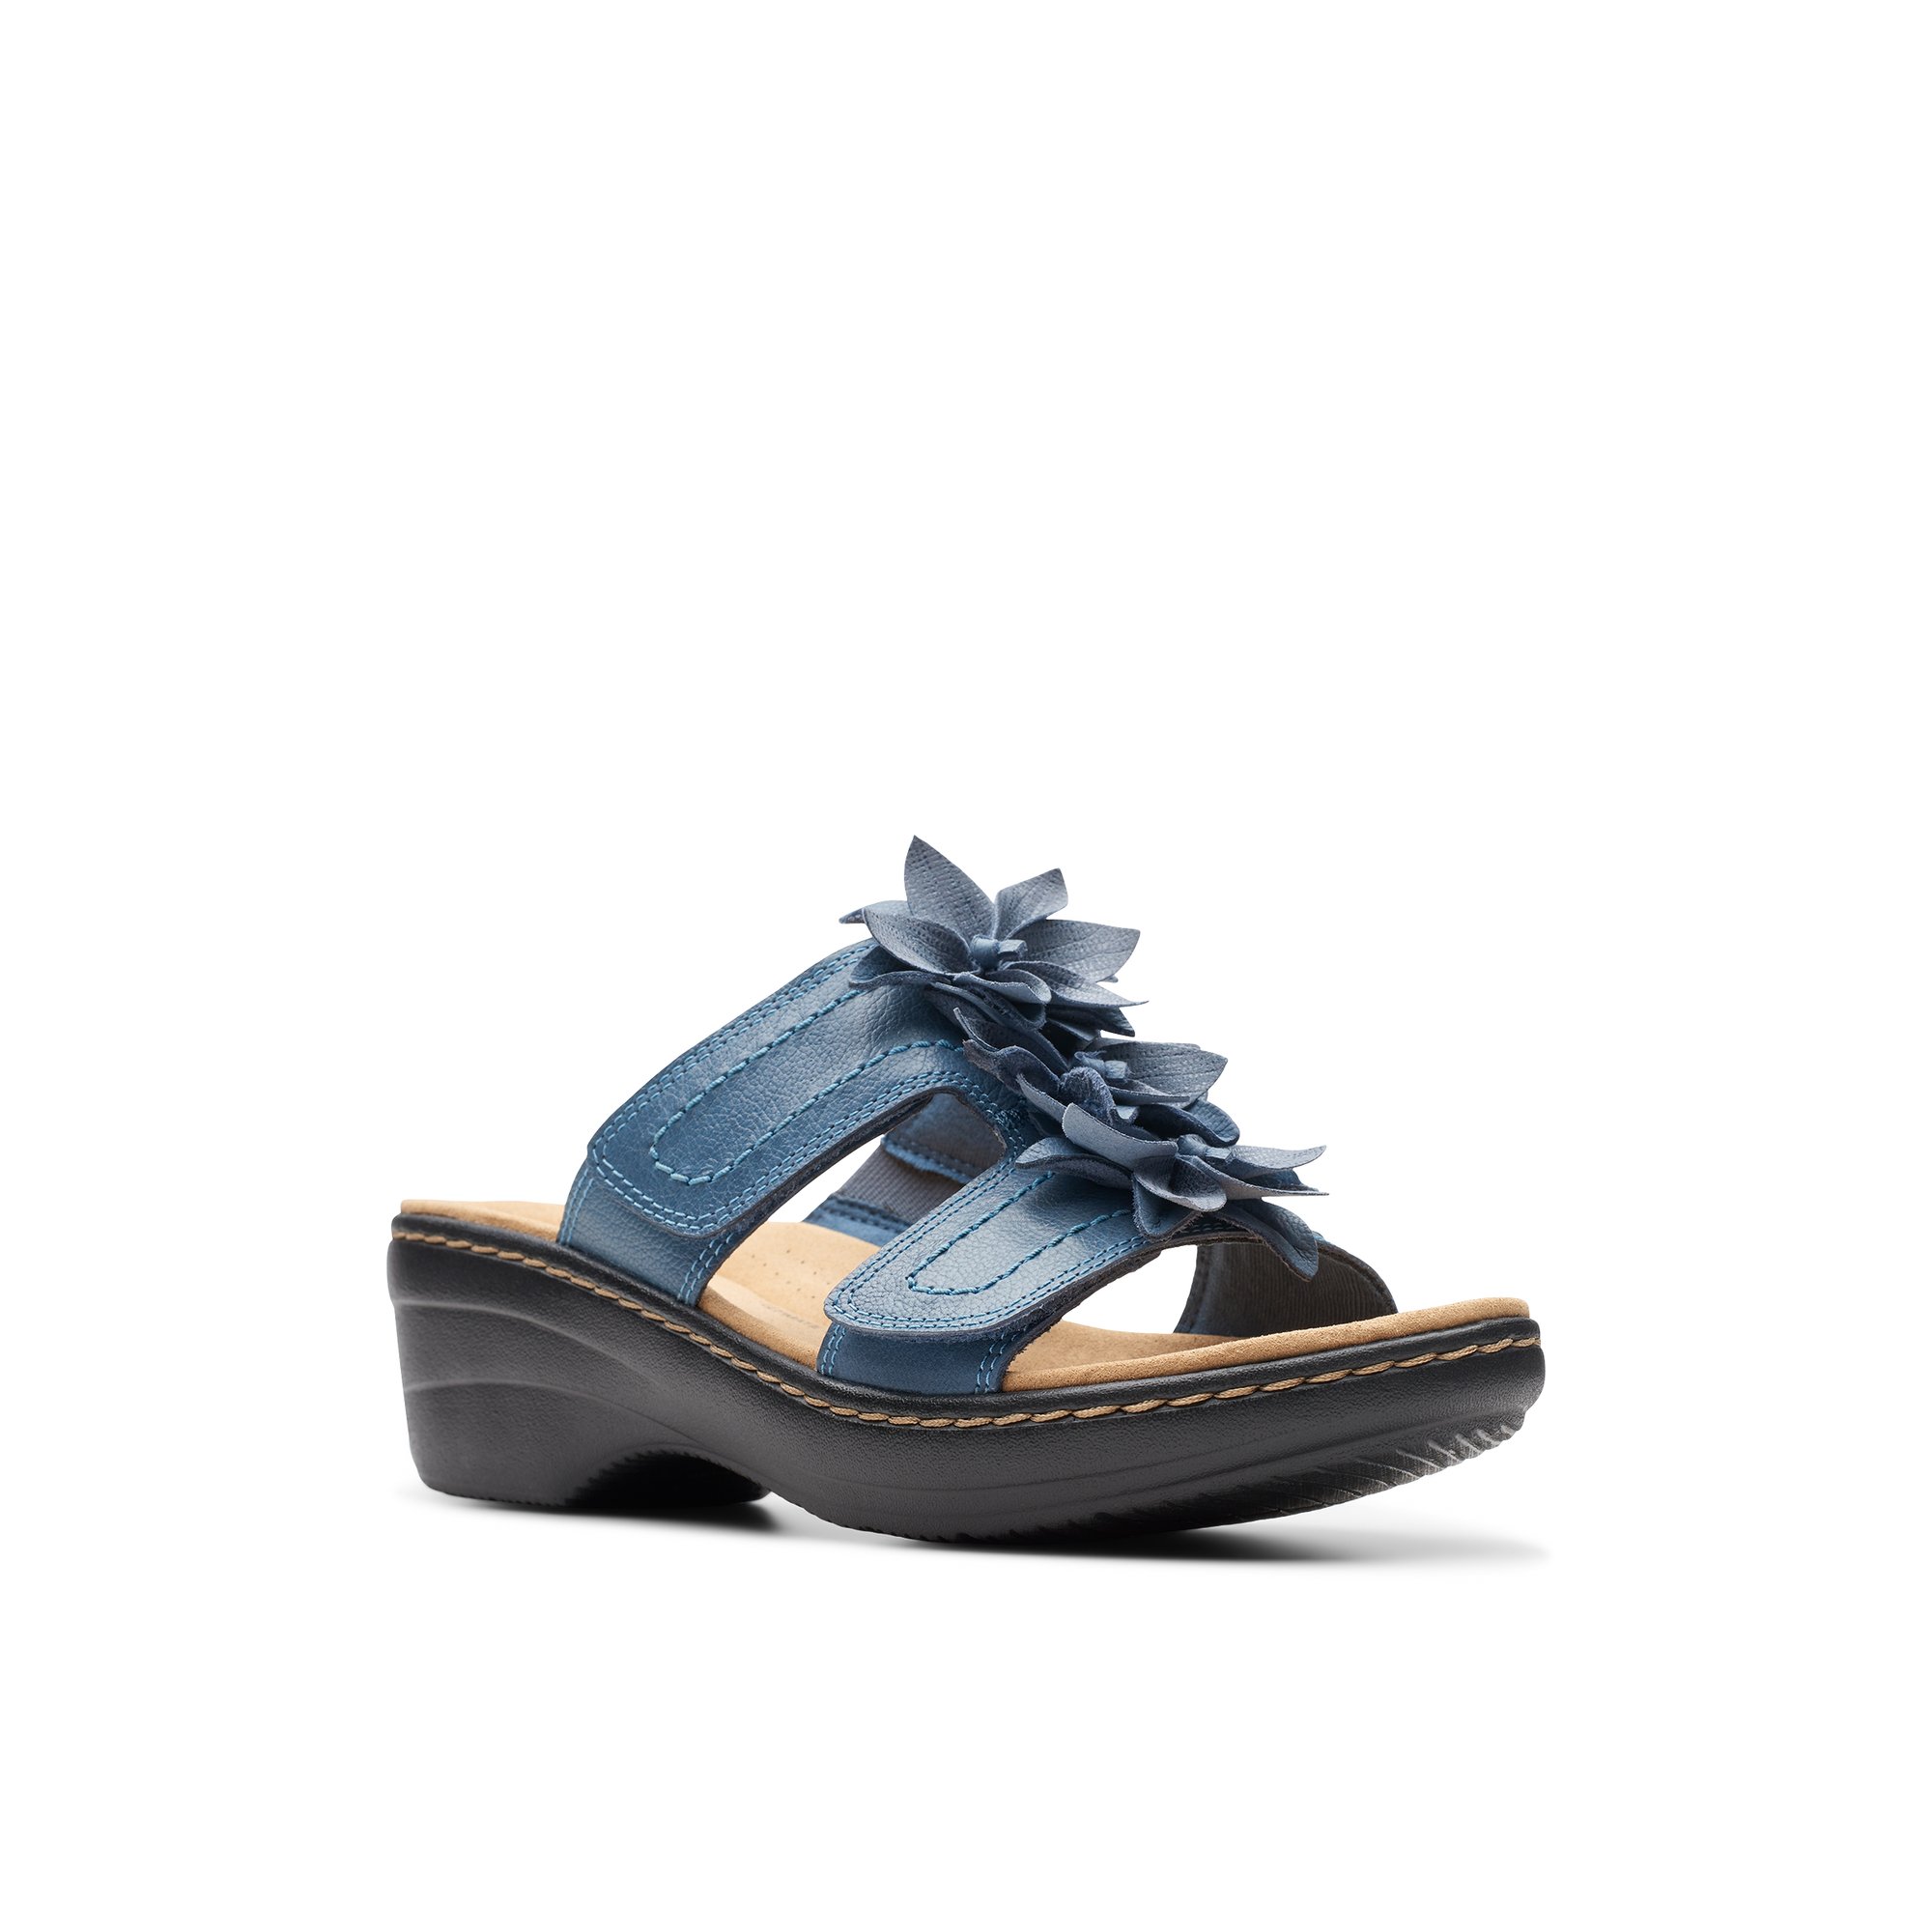 Clarks Merliah Rae - Women's Footwear Sandals Footbed